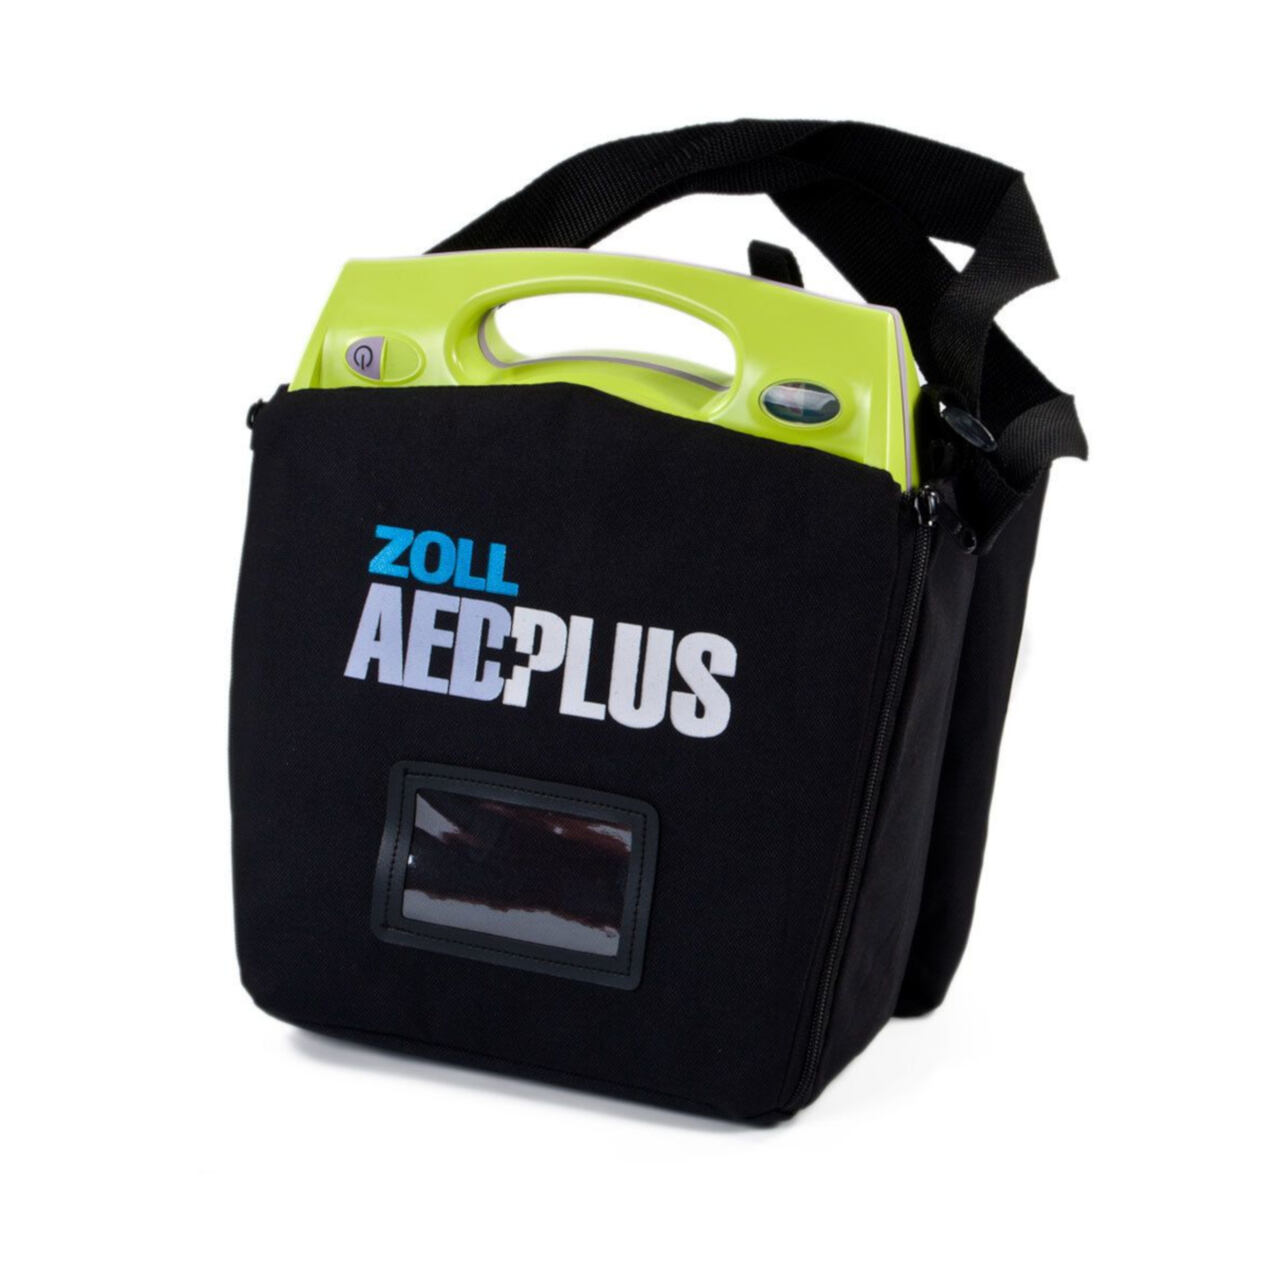 Defibrylator Zoll AED Plus Stat-padz II